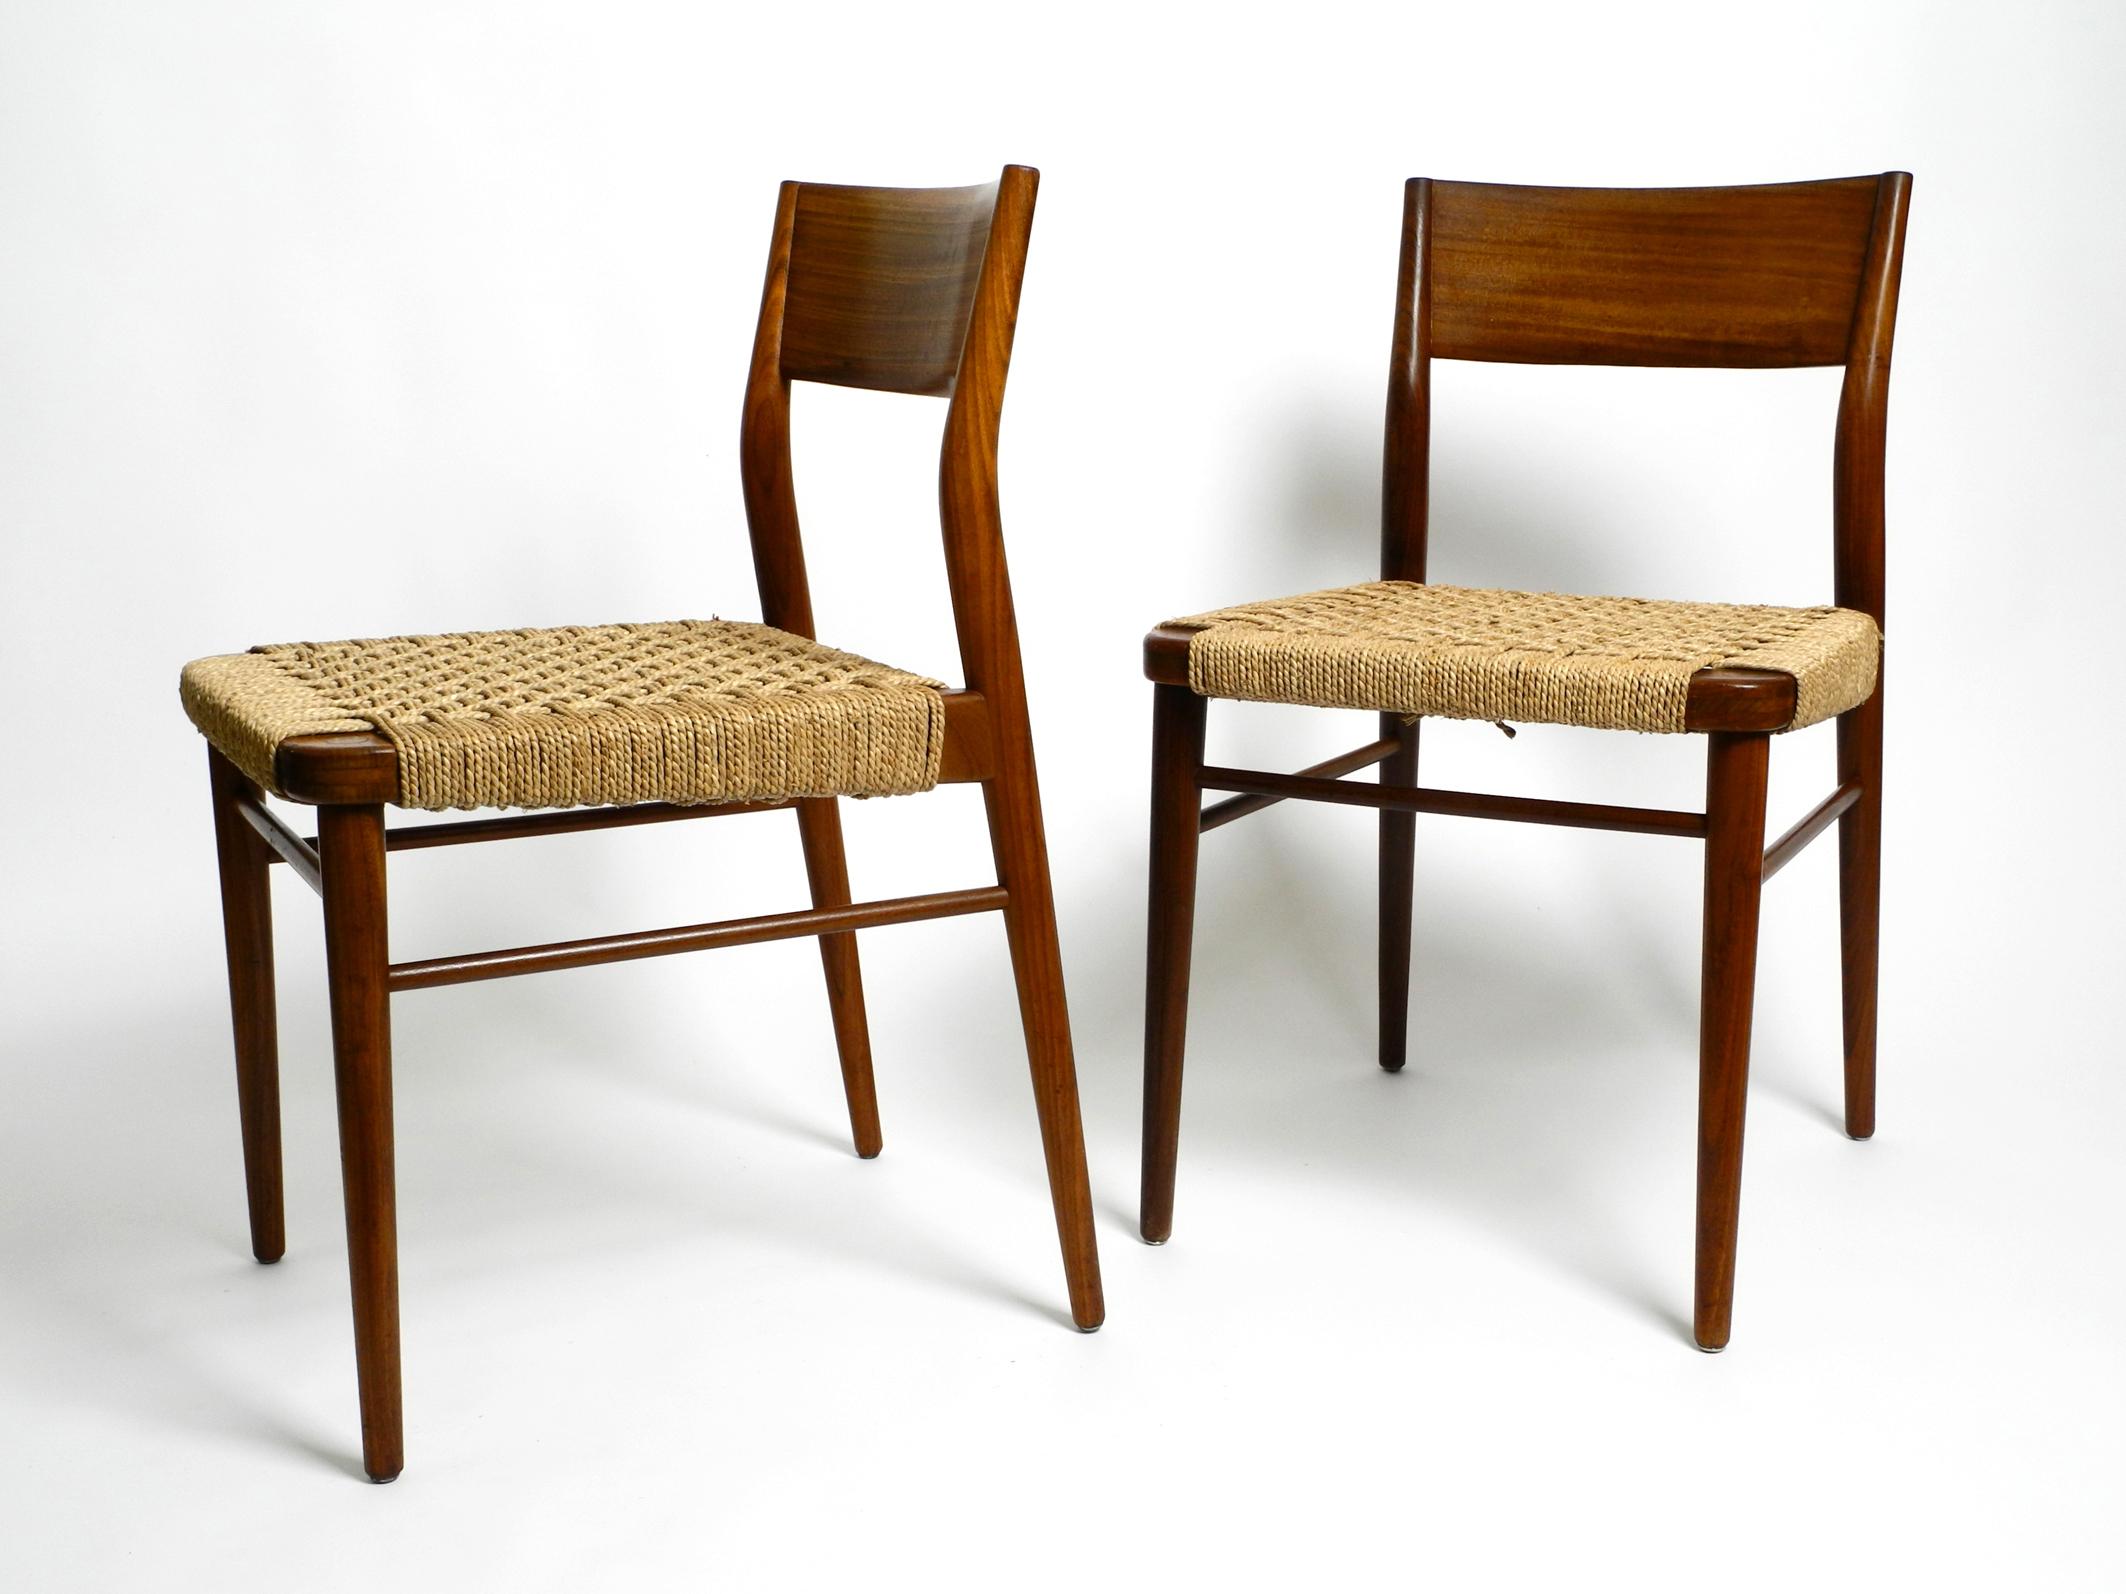 Zwei originale Esszimmerstühle aus den 1960er Jahren aus Walnussholz und geflochtenen Binsenschnüren.
Hergestellt von Wilkhahn, Modell 351. Entworfen von Georg Leowald. Hergestellt in Deutschland.
Schönes minimalistisches Design in sehr gutem